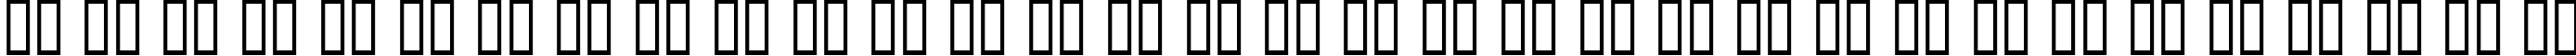 Пример написания русского алфавита шрифтом Bottix